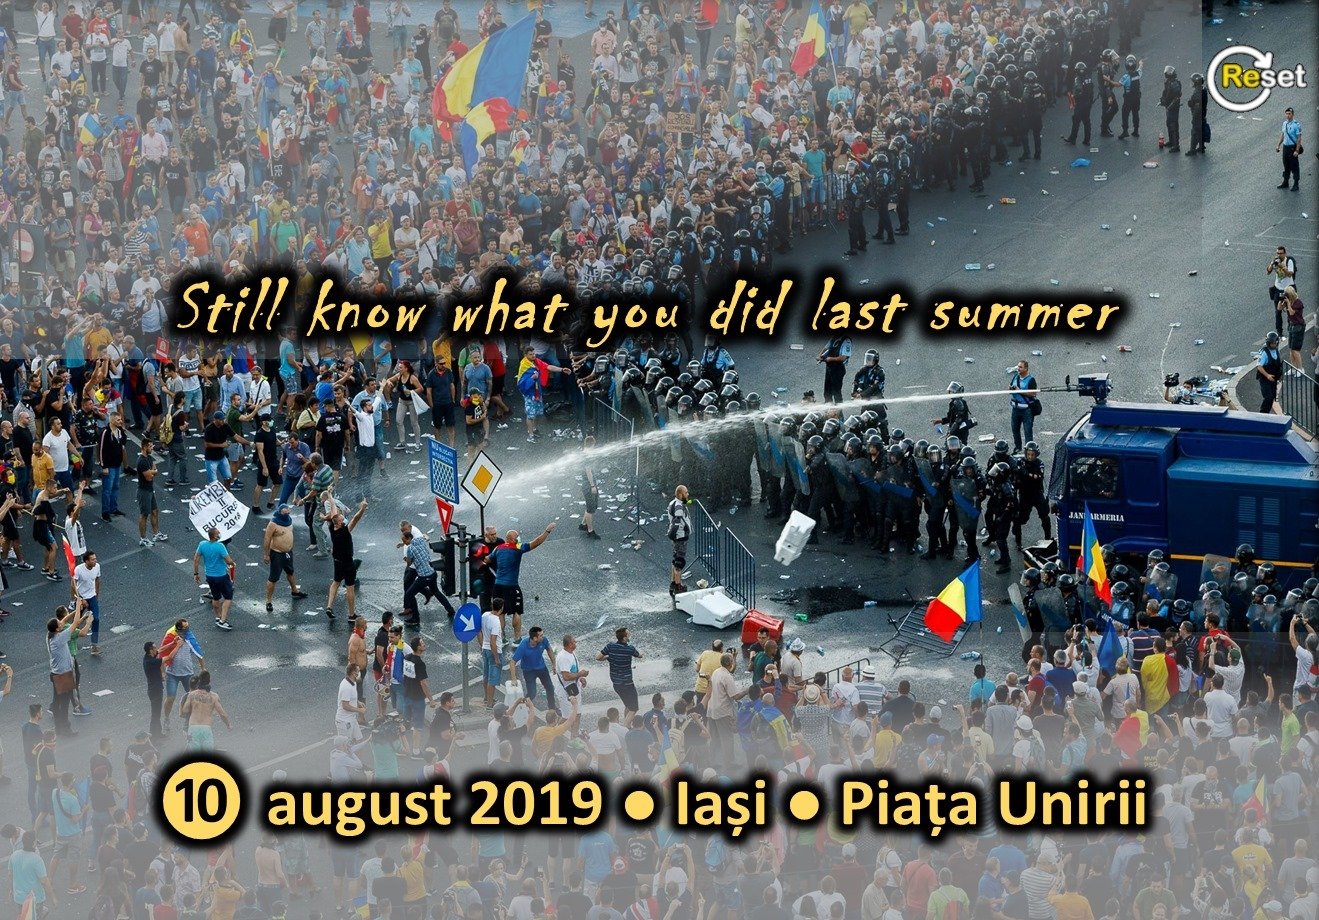  Mobilizare pentru proteste pe 10 august la Iași: ”Nu am uitat ce-ați făcut astă vară!